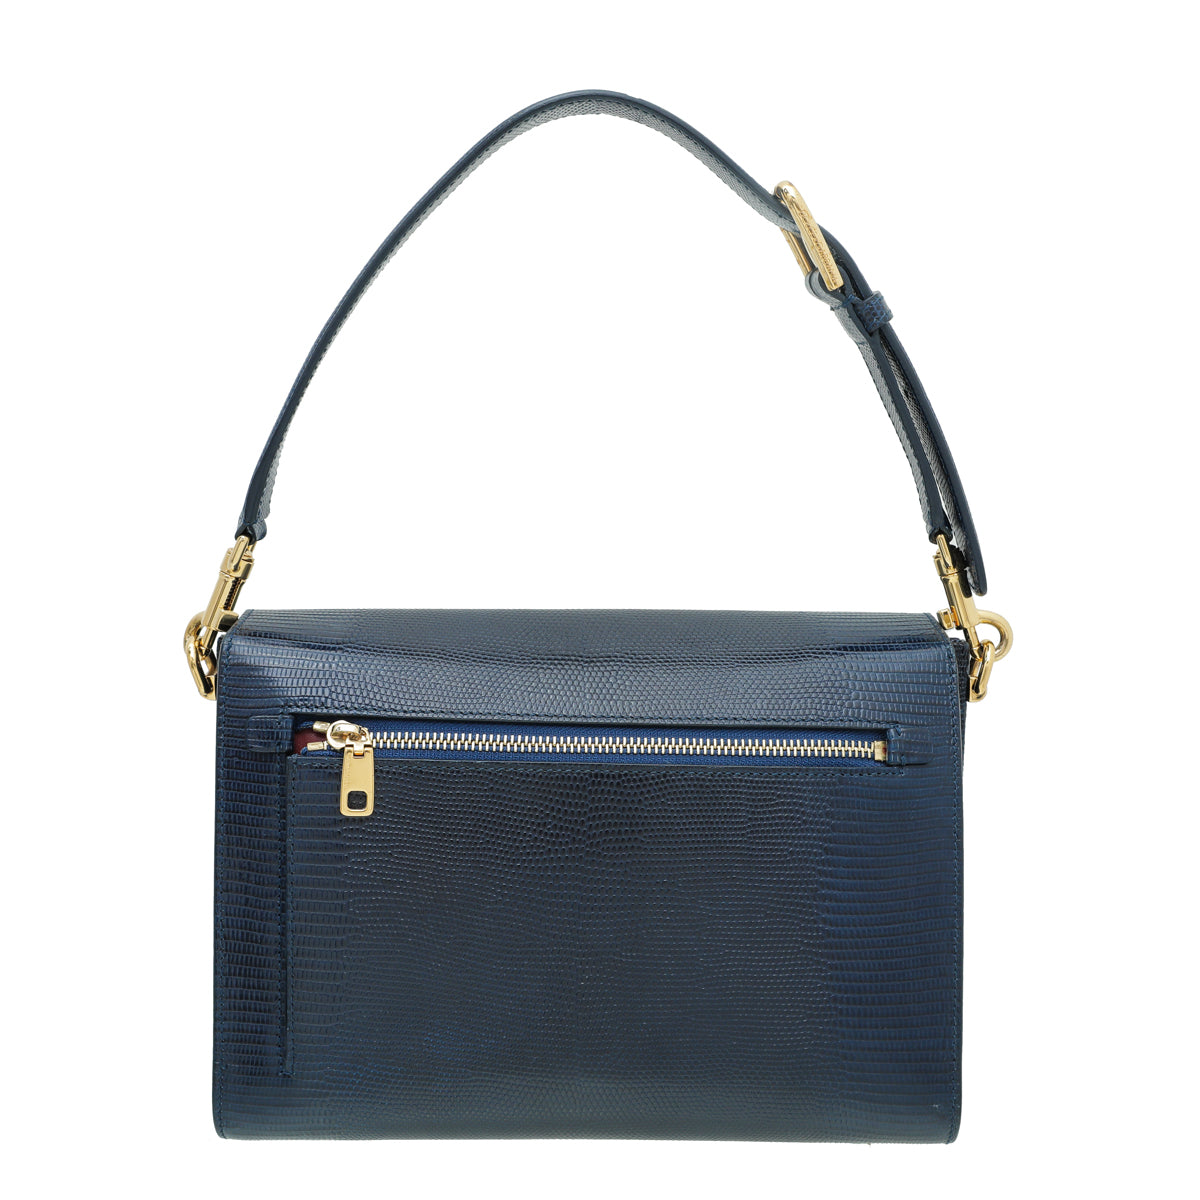 Dolce & Gabbana Navy Blue Lizard Effect Lucia Flap Bag